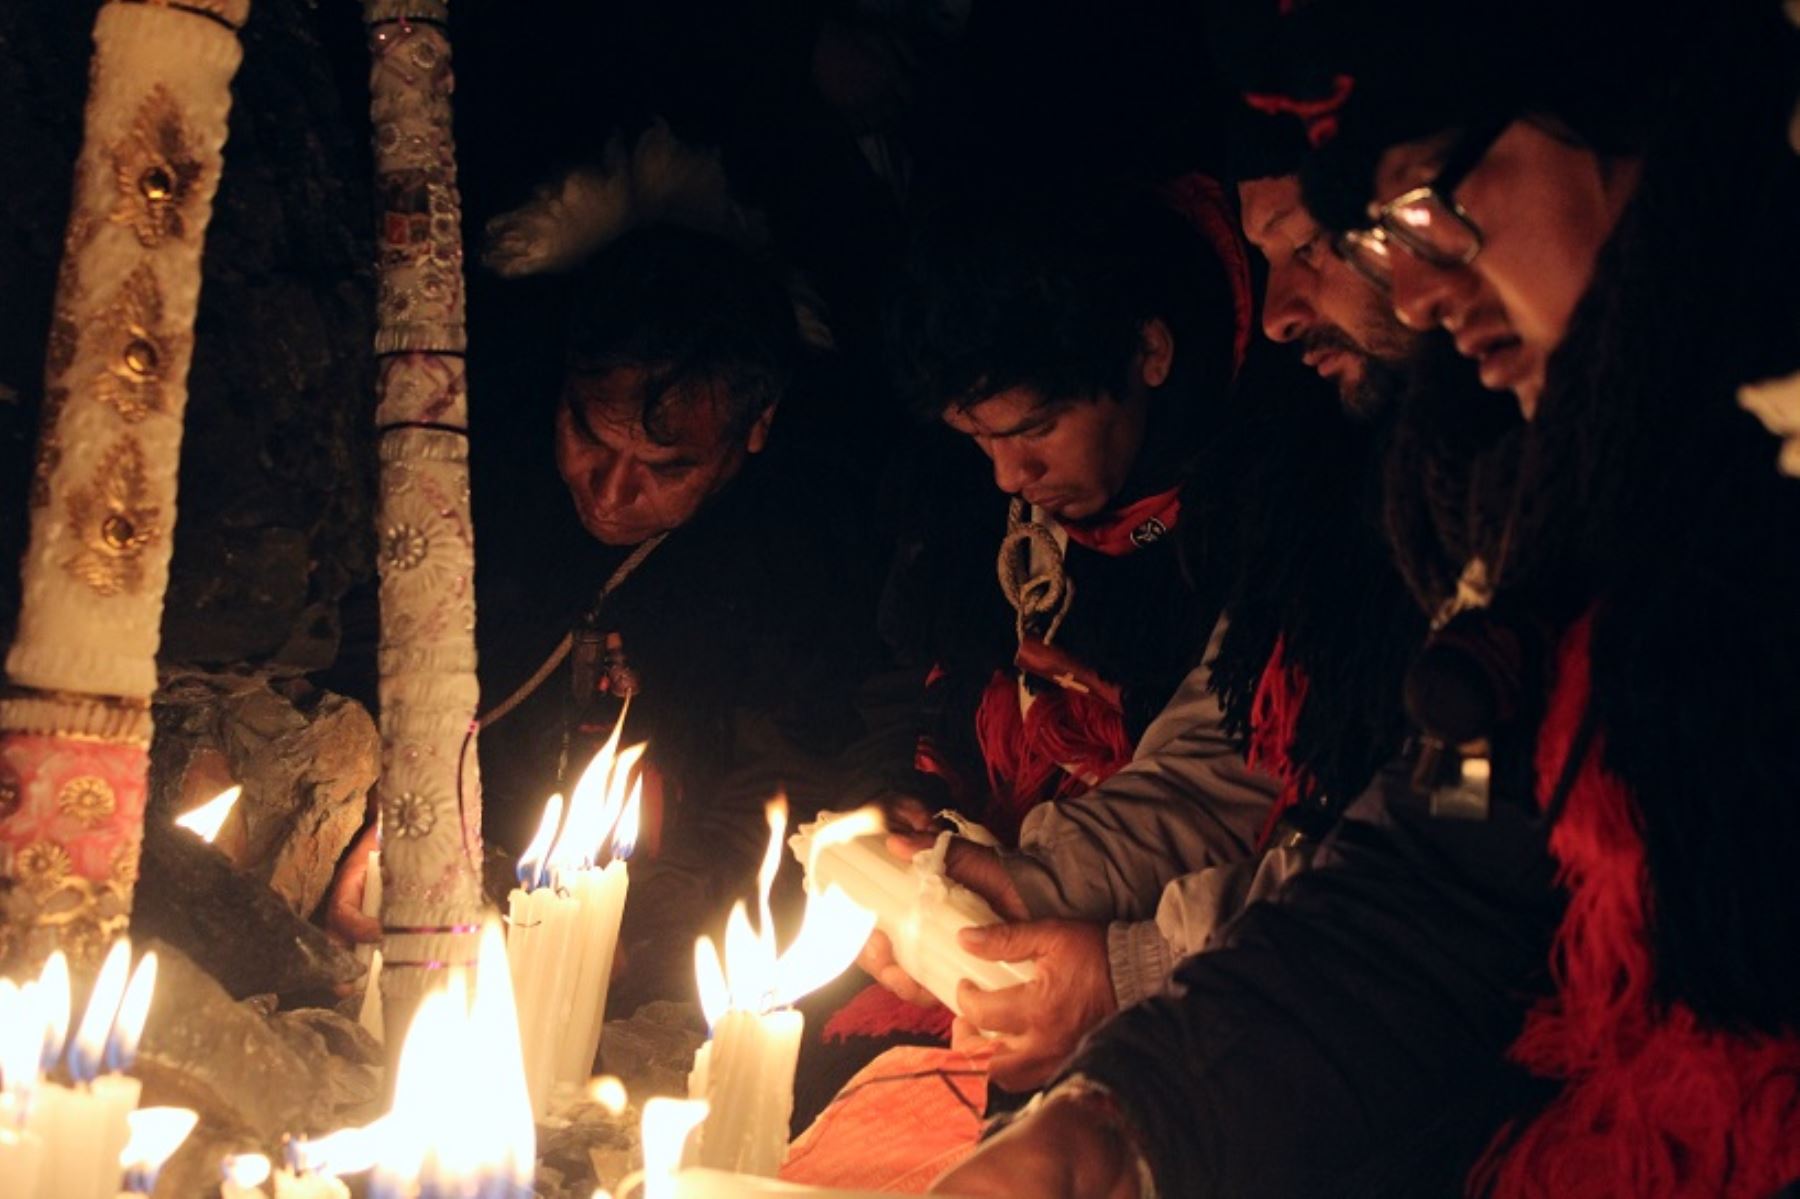 Los nuevos integrantes son bautizados siguiendo un antiguo ritual andino. Ellos sonazotados con látigo en señal de dolor que sufrió Jesús. Foto: ANDINA/Percy Hurtado